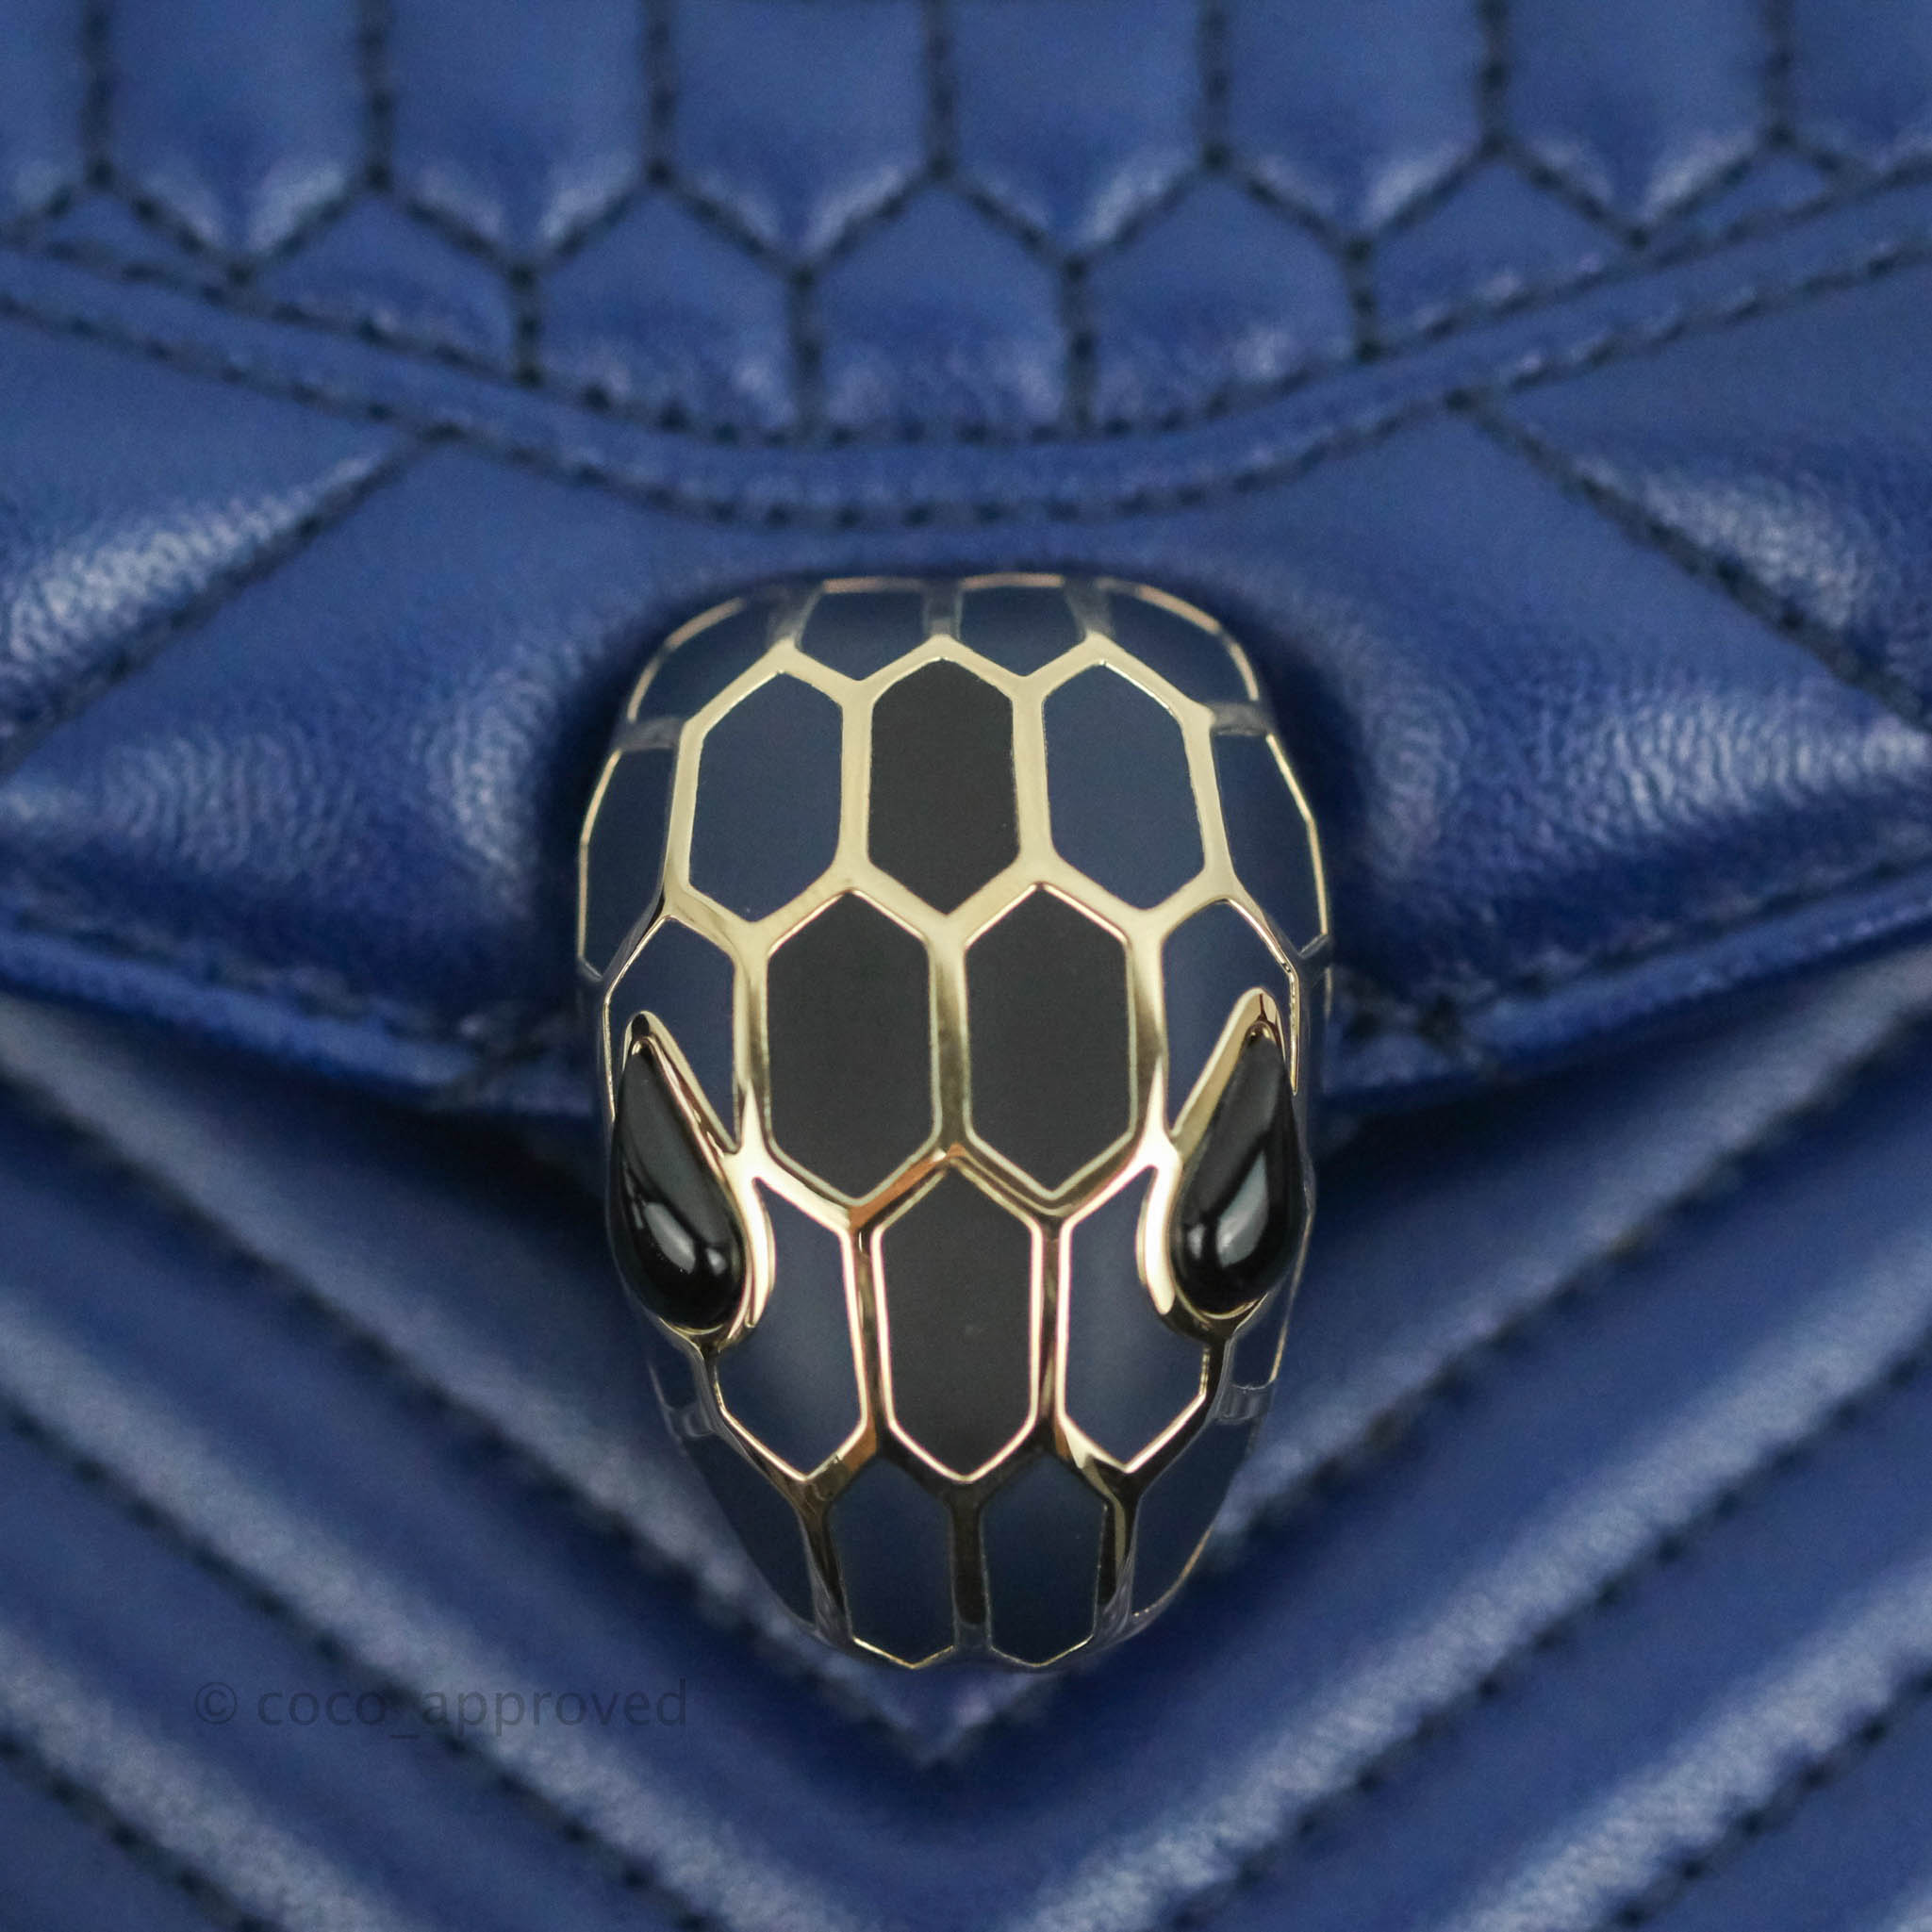 Authentic Bvlgari blue serpenti bag